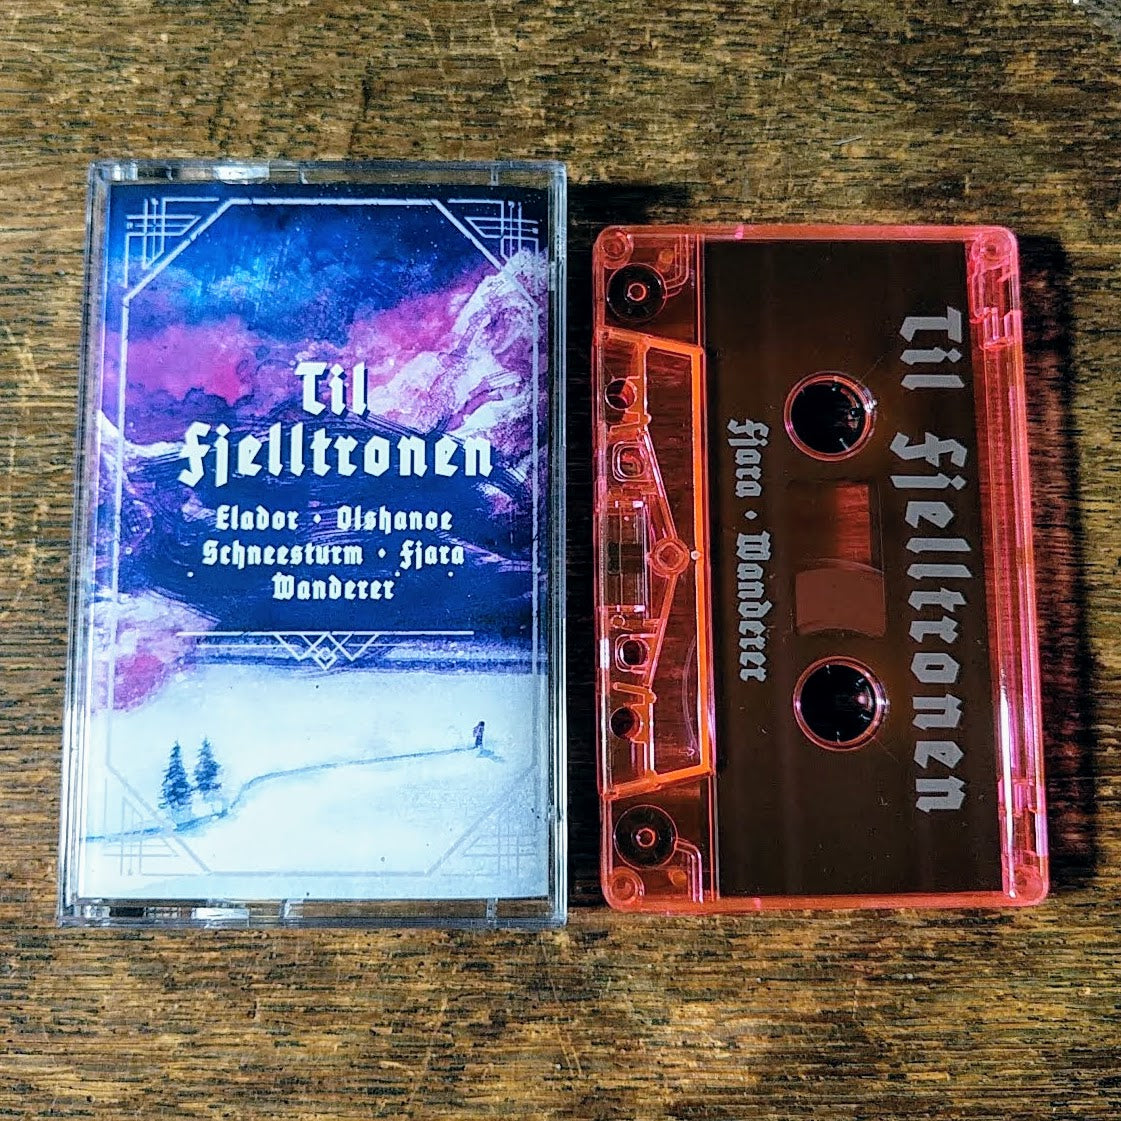 [SOLD OUT] V/A "Til Fjelltronen" (Tribute to Wongraven) Cassette Tape